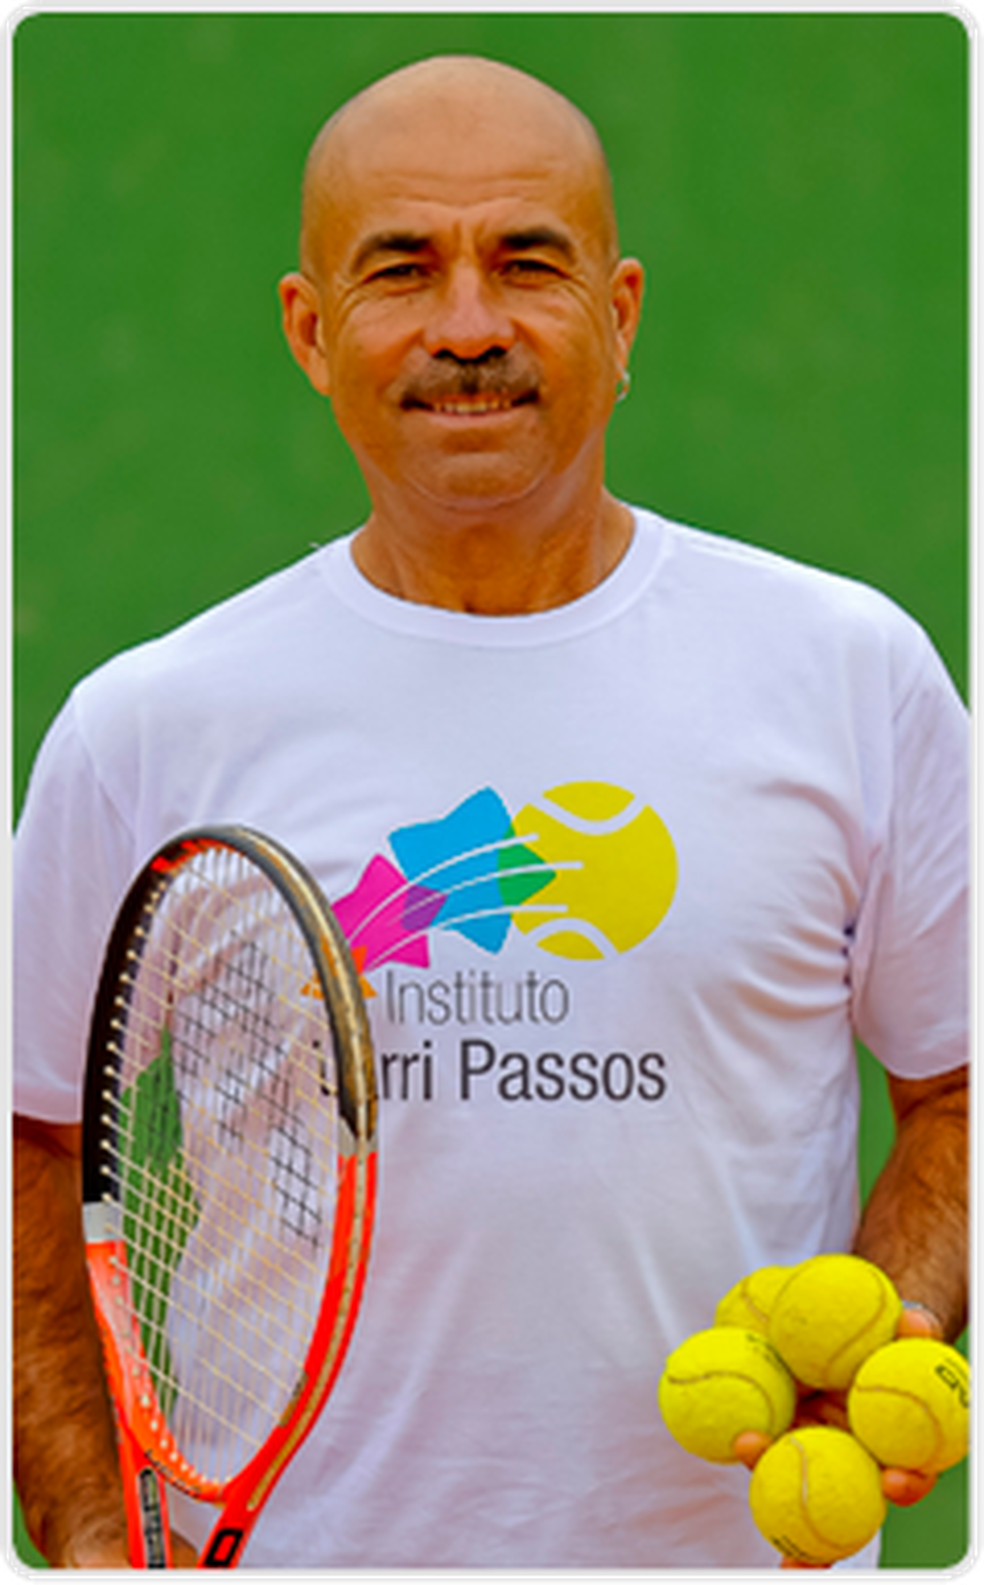 Larri Passos mantém um instituto de tênis (Foto: Divulgação)